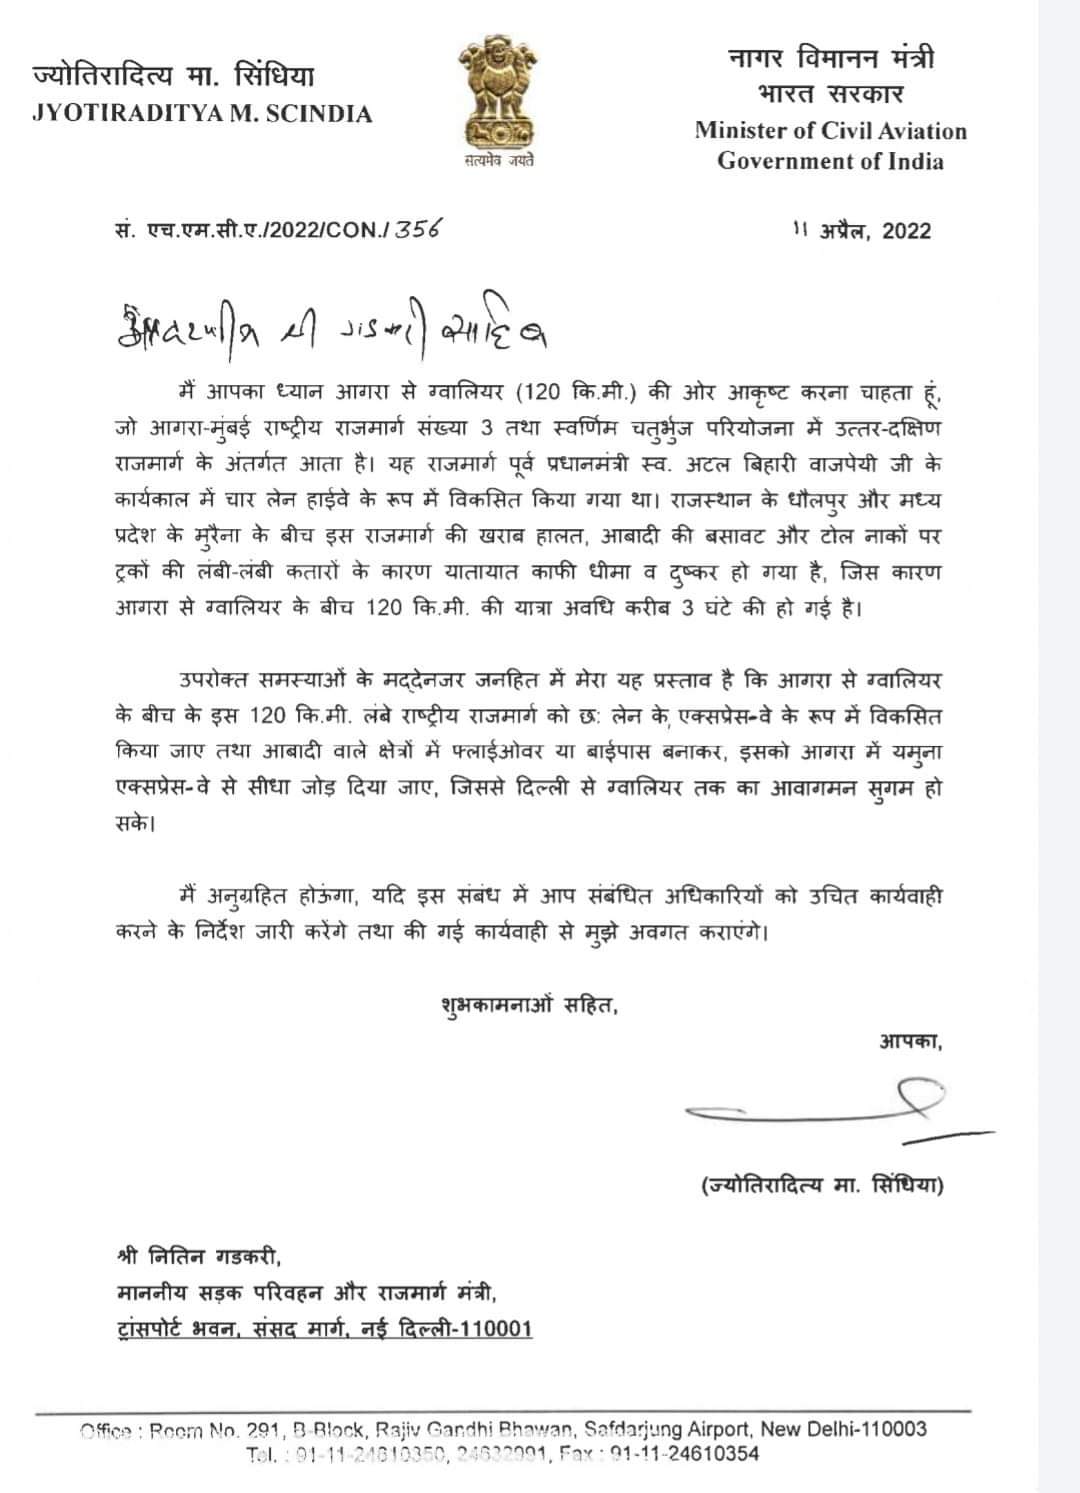 सिंधिया ने नितिन गडकरी को लिखा पत्र, MP के लिए की ये बड़ी मांग